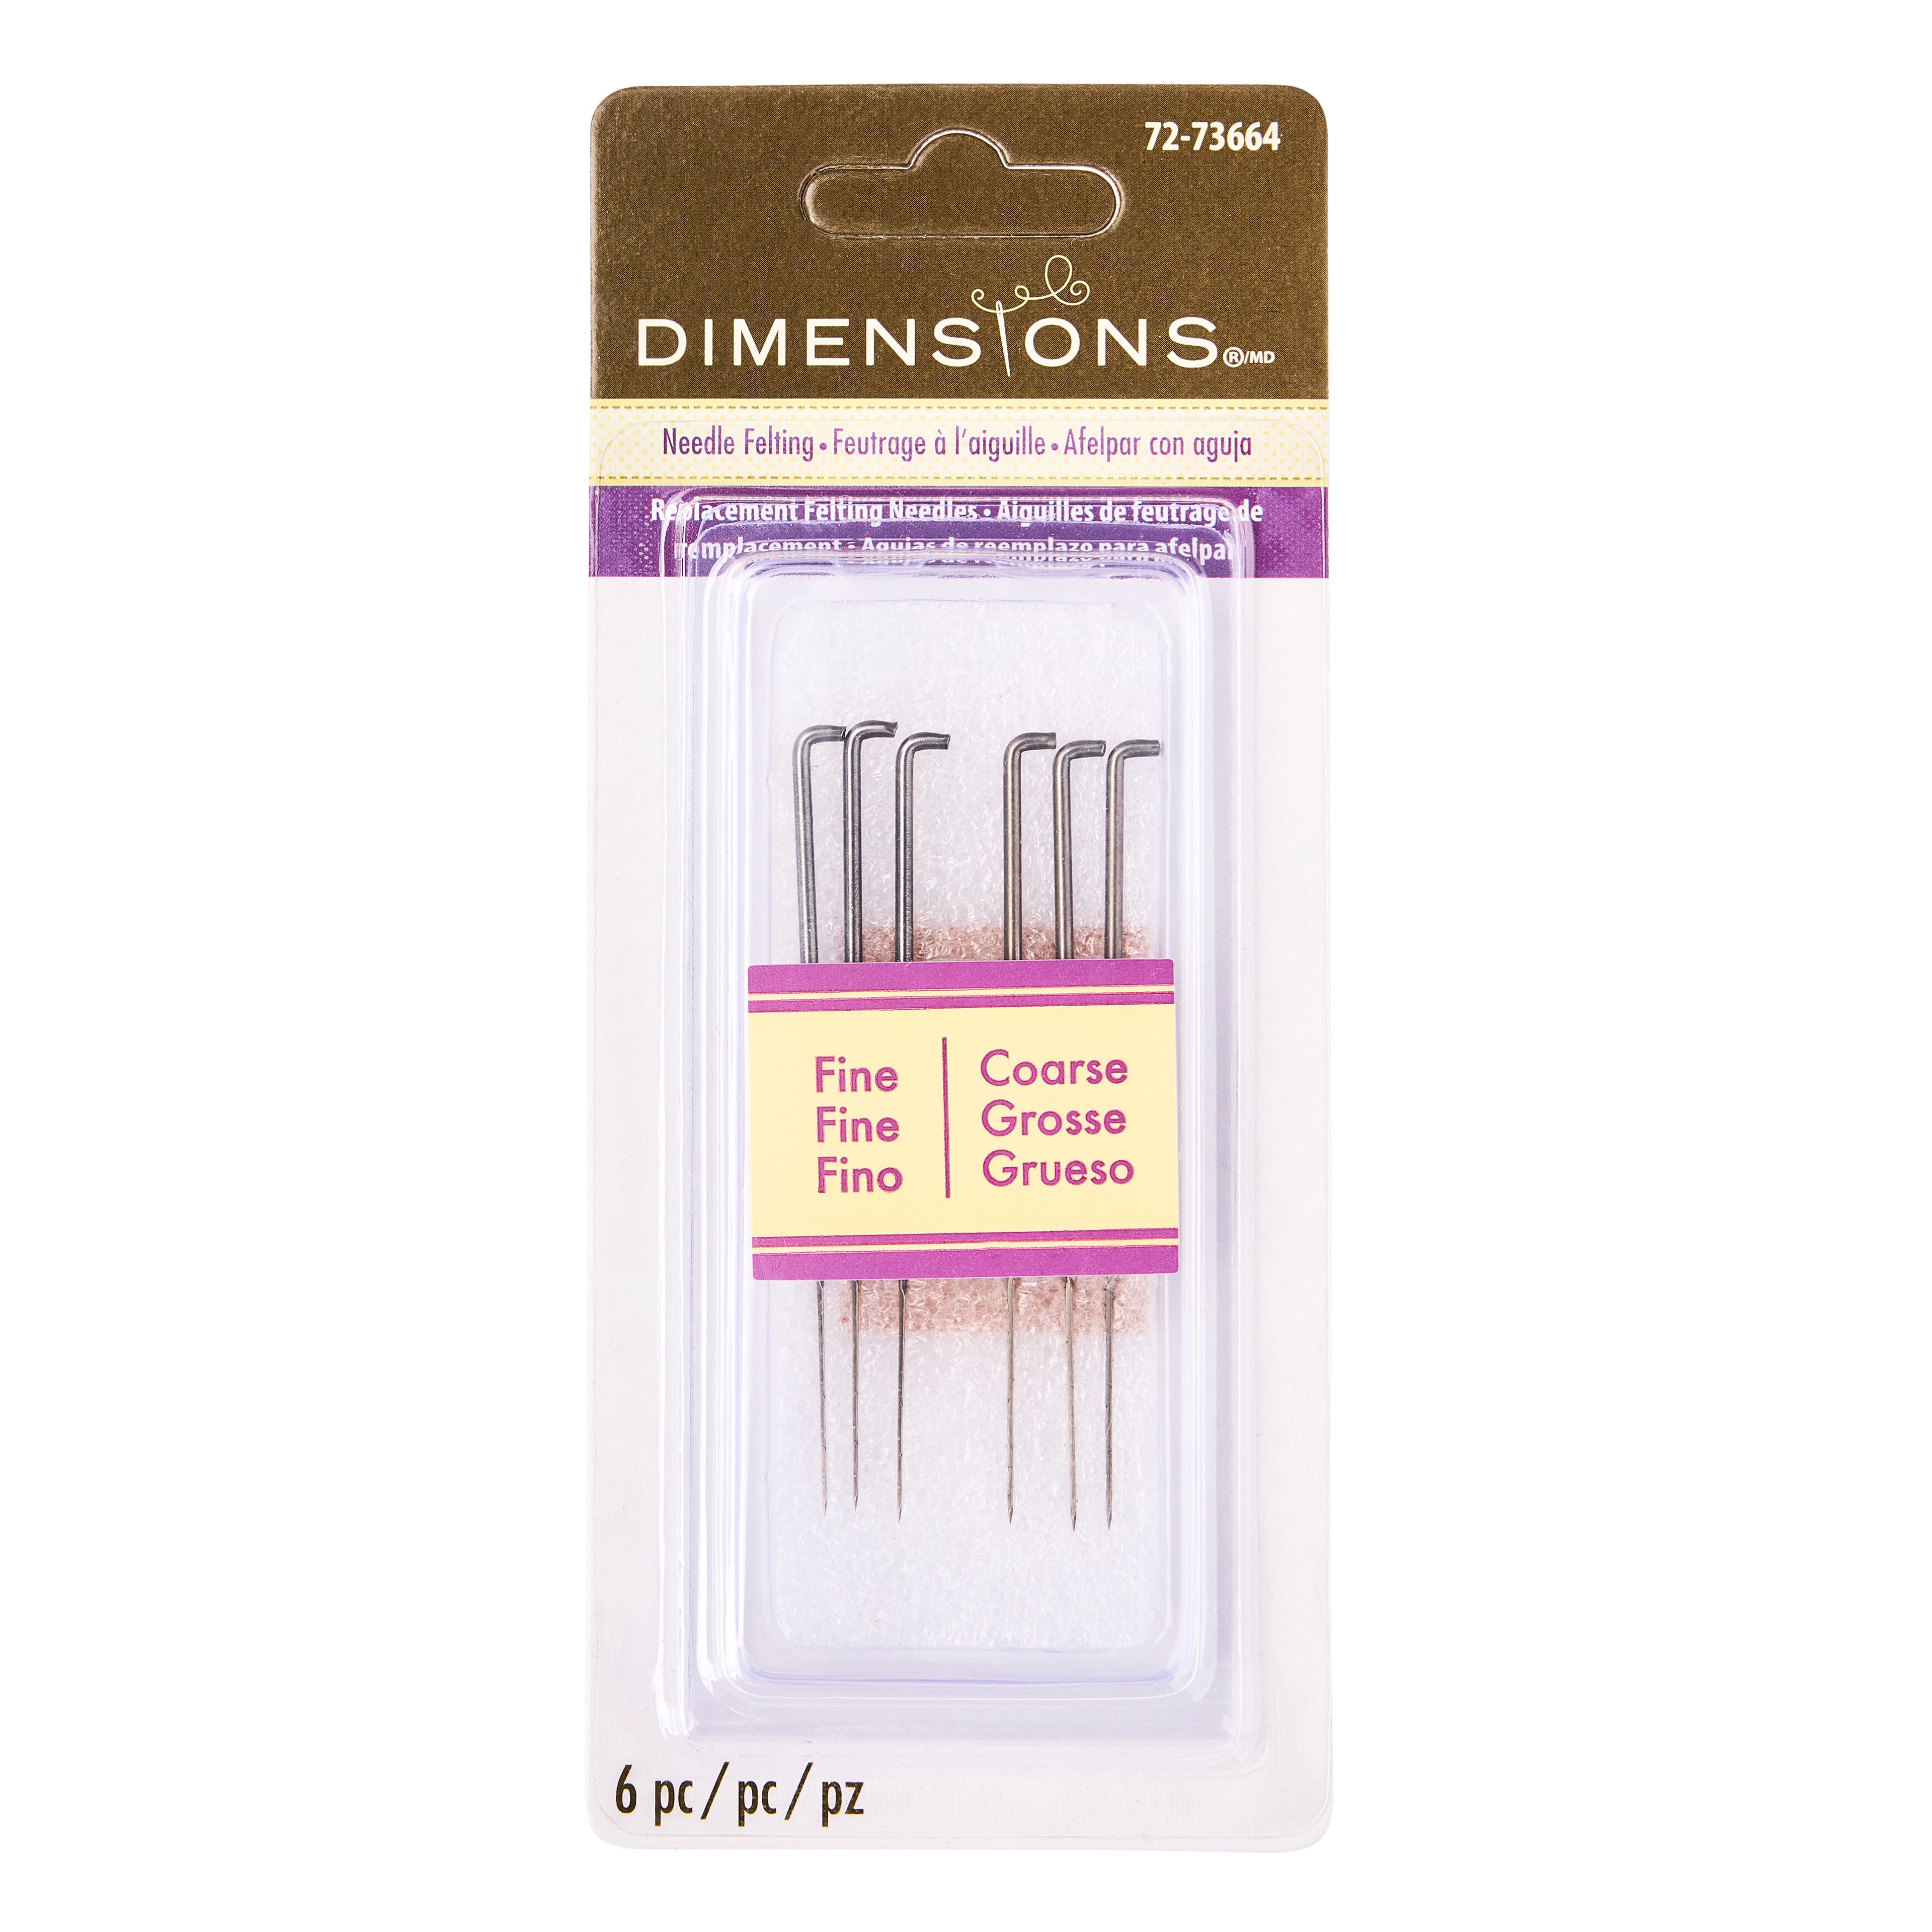 Dimensions Single Needle Felting Tool